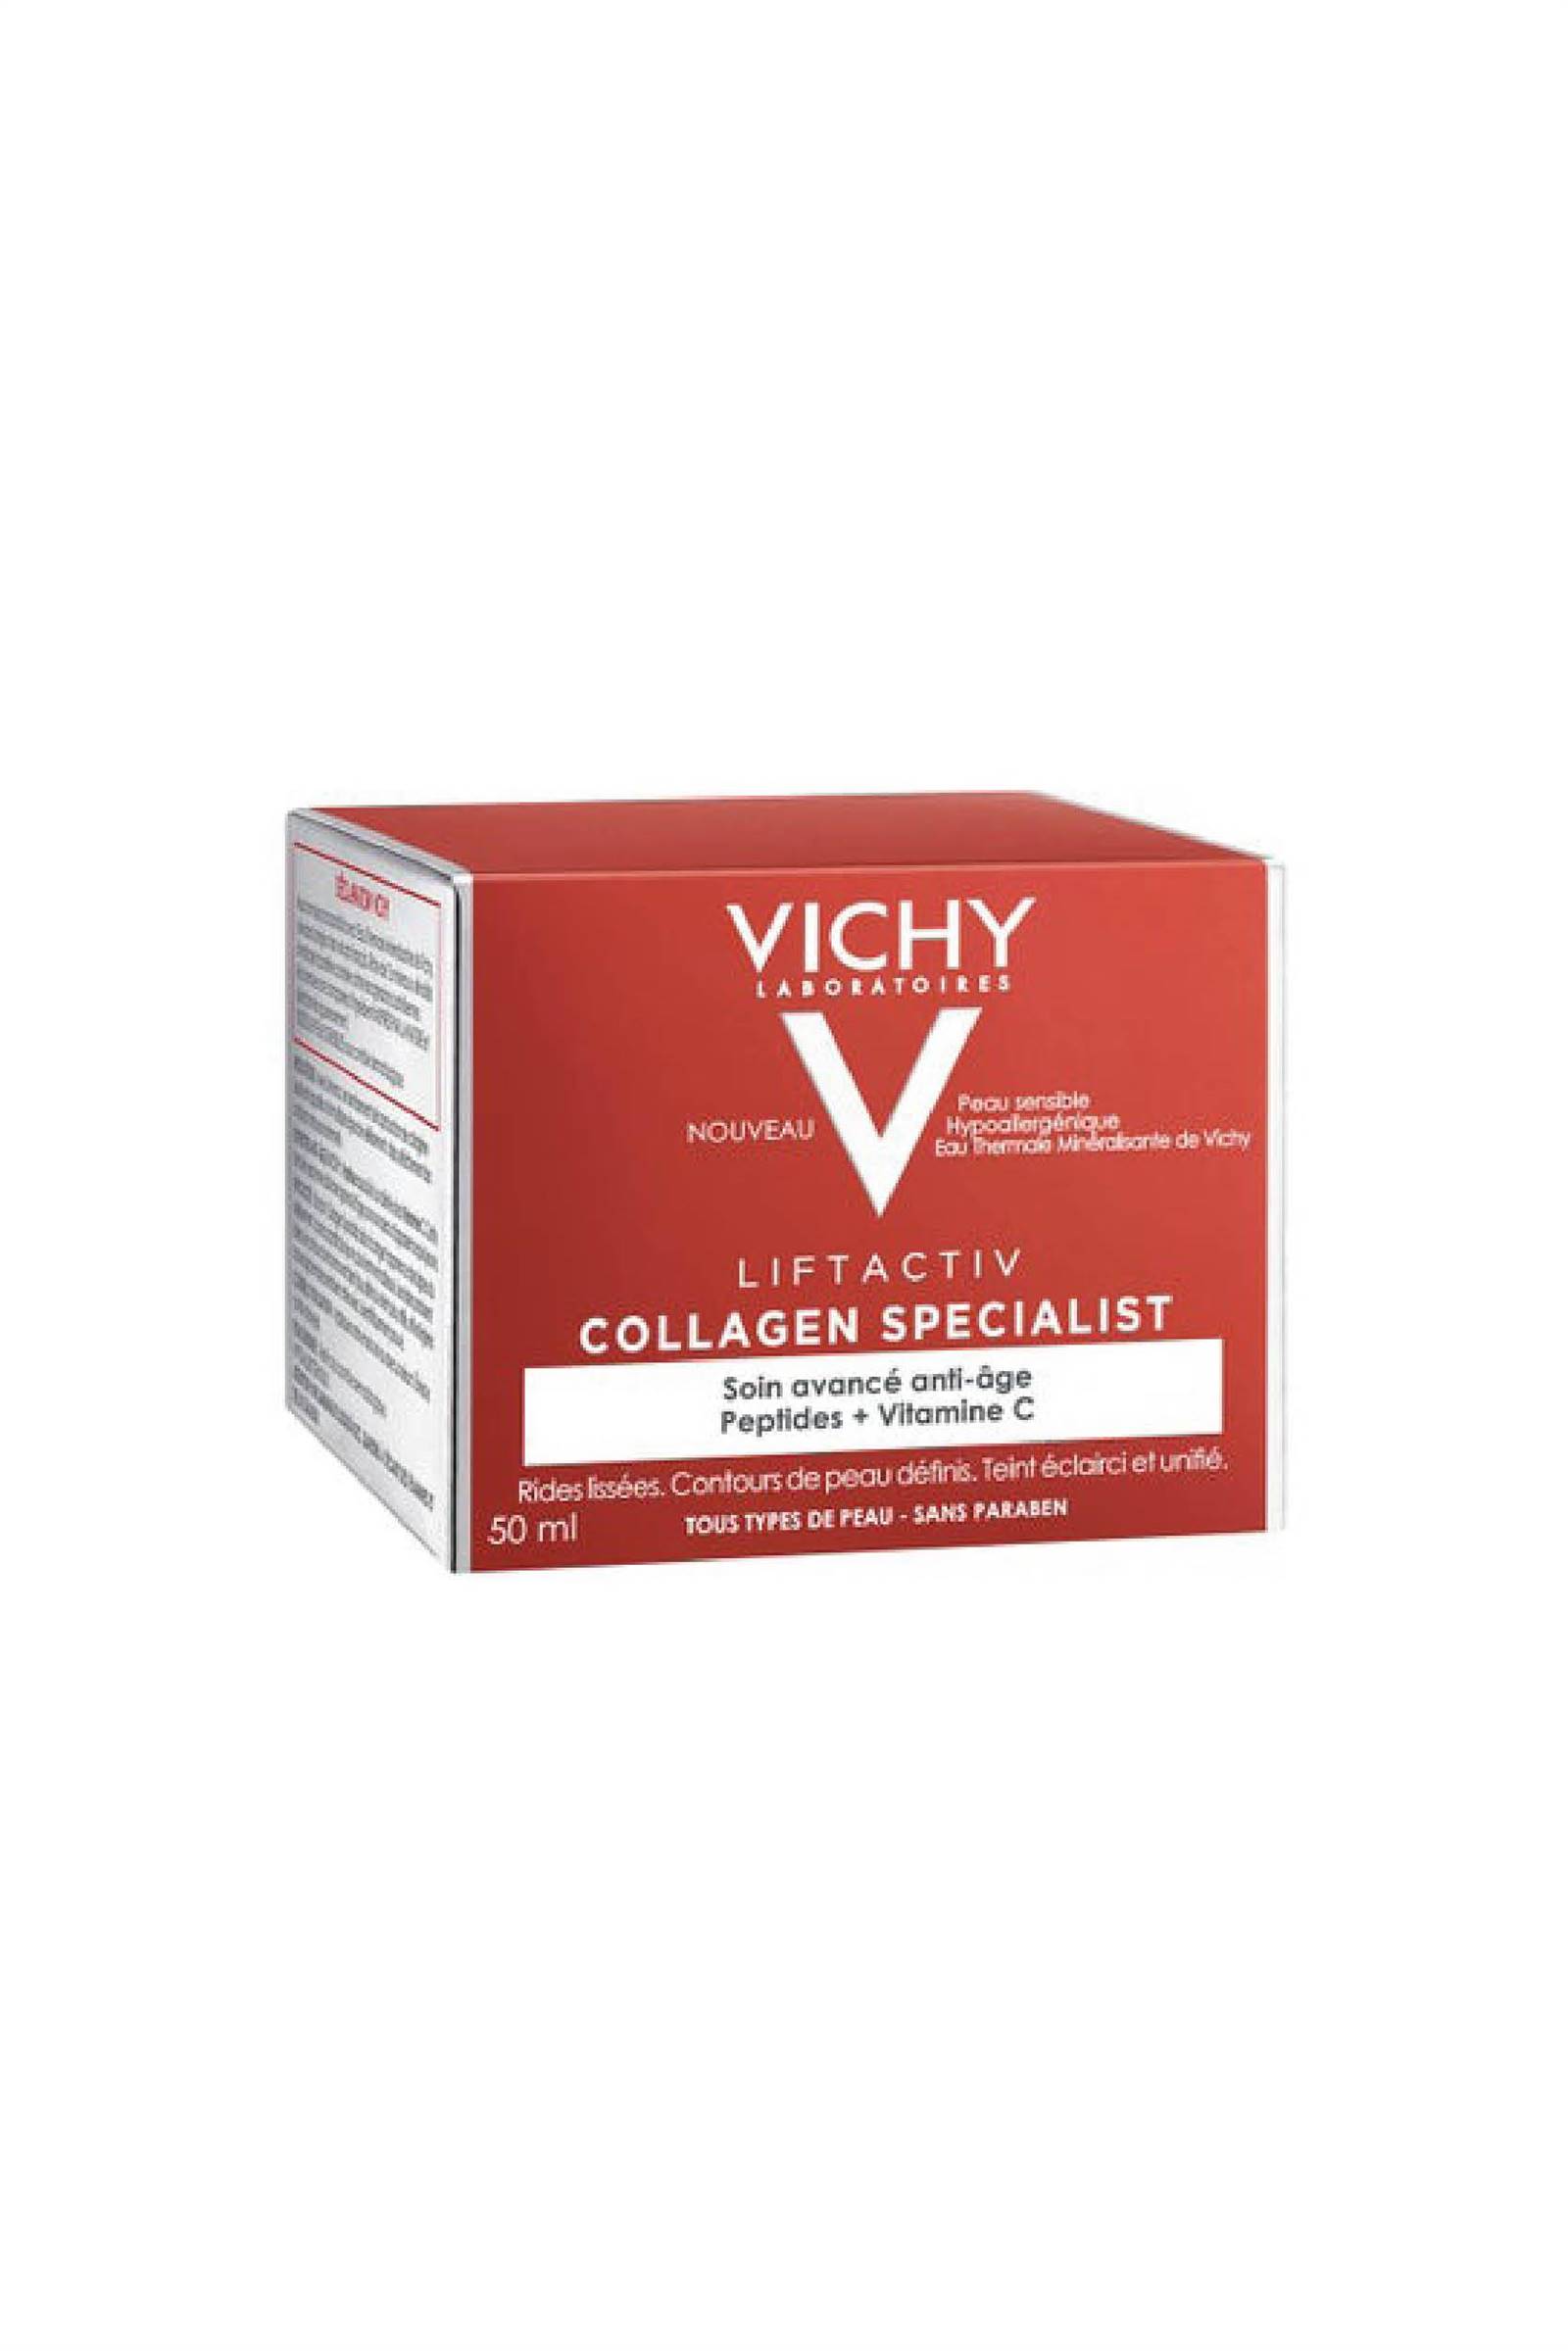 cremas promofarma antiedad2. Vichy Liftactiv Collagen Specialist